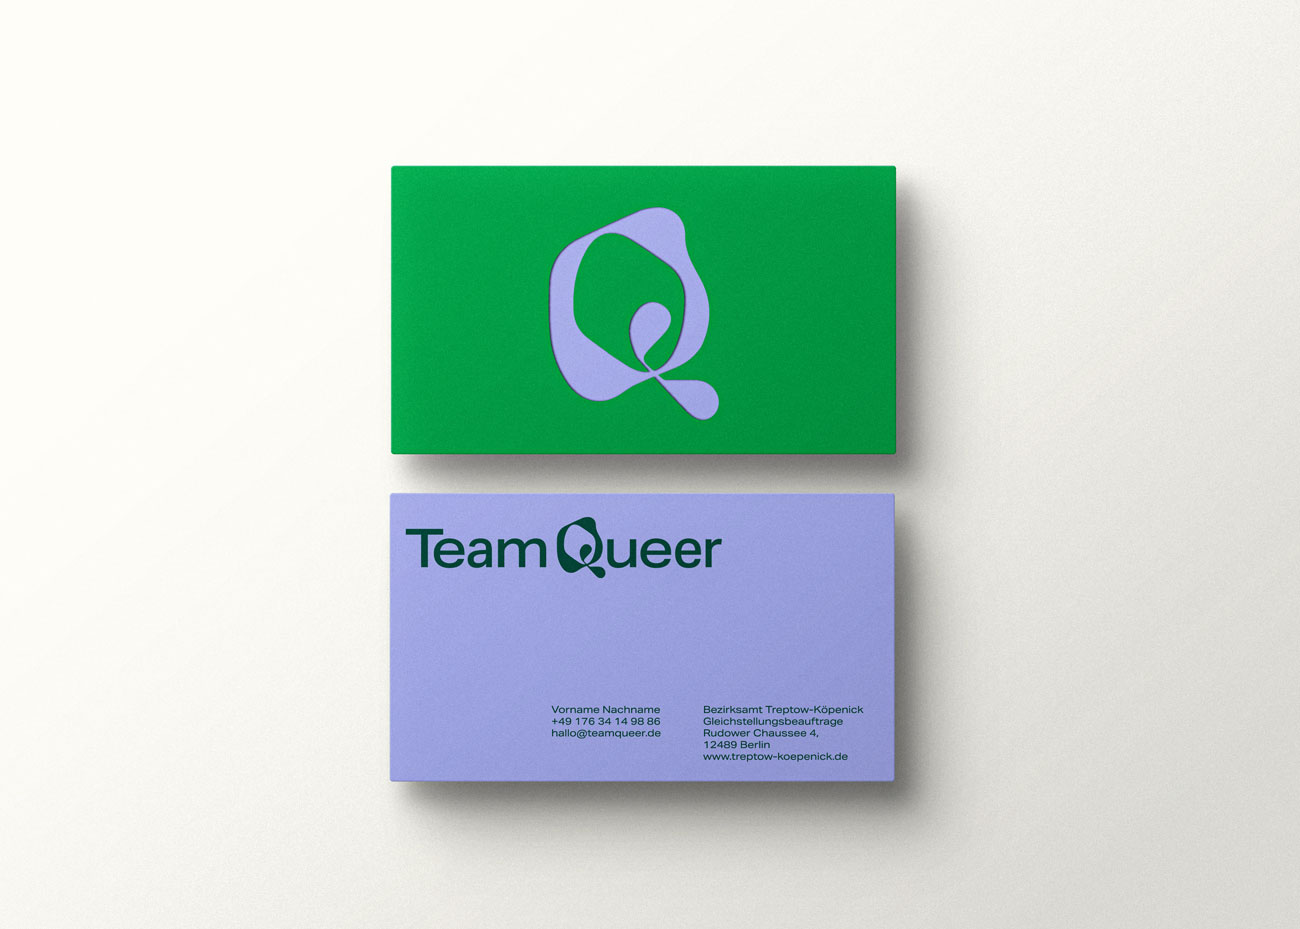 Zwei Visitenkarten liegen übereinander. Auf der oberen, grünen Visitenkarte ist das abstrakte, grafische Q als Bildmarke in violet abgebildet. Die untere Karte ist violet mit dunkelgrüner Schrift. Oben Links das Logo „Team Queer“, darunter in kleiner Schrift die Kontaktdaten.